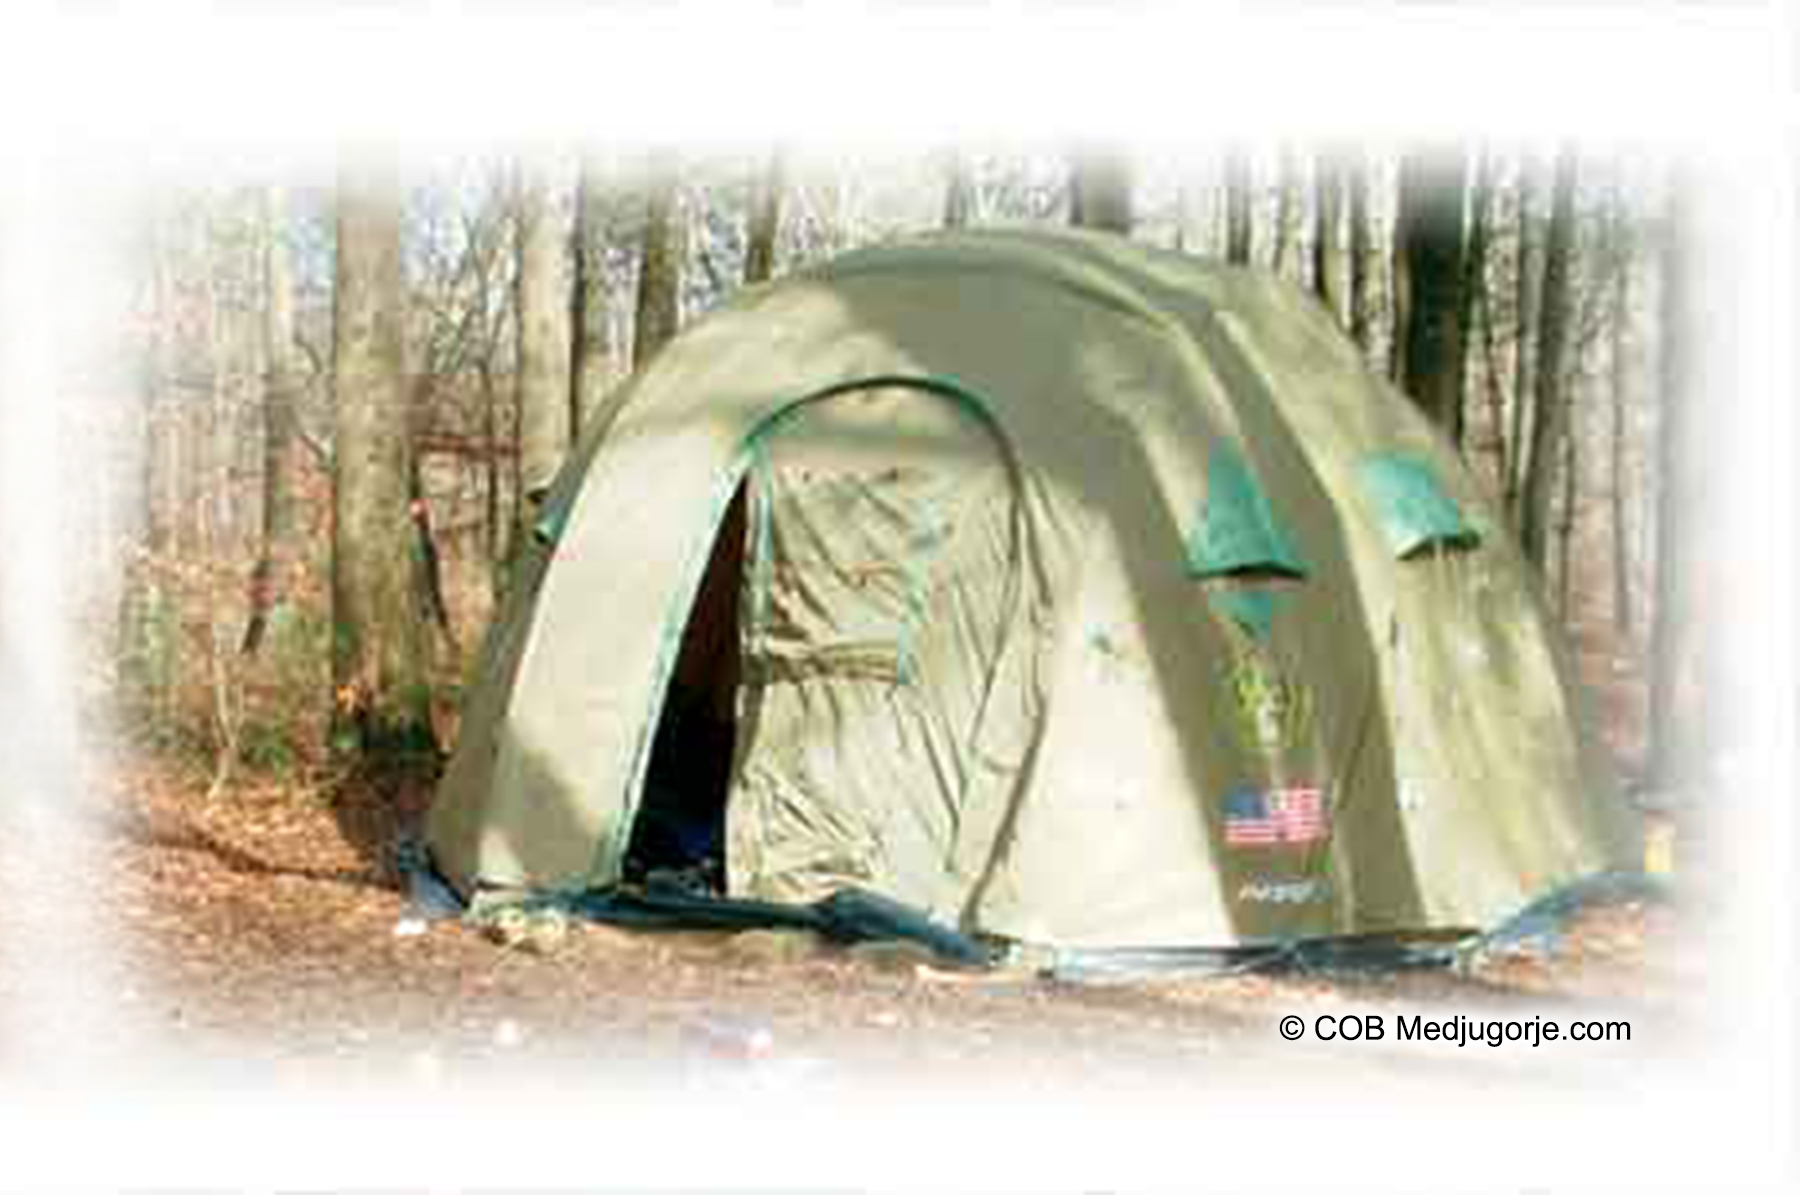 July 1-9 2009 Camping